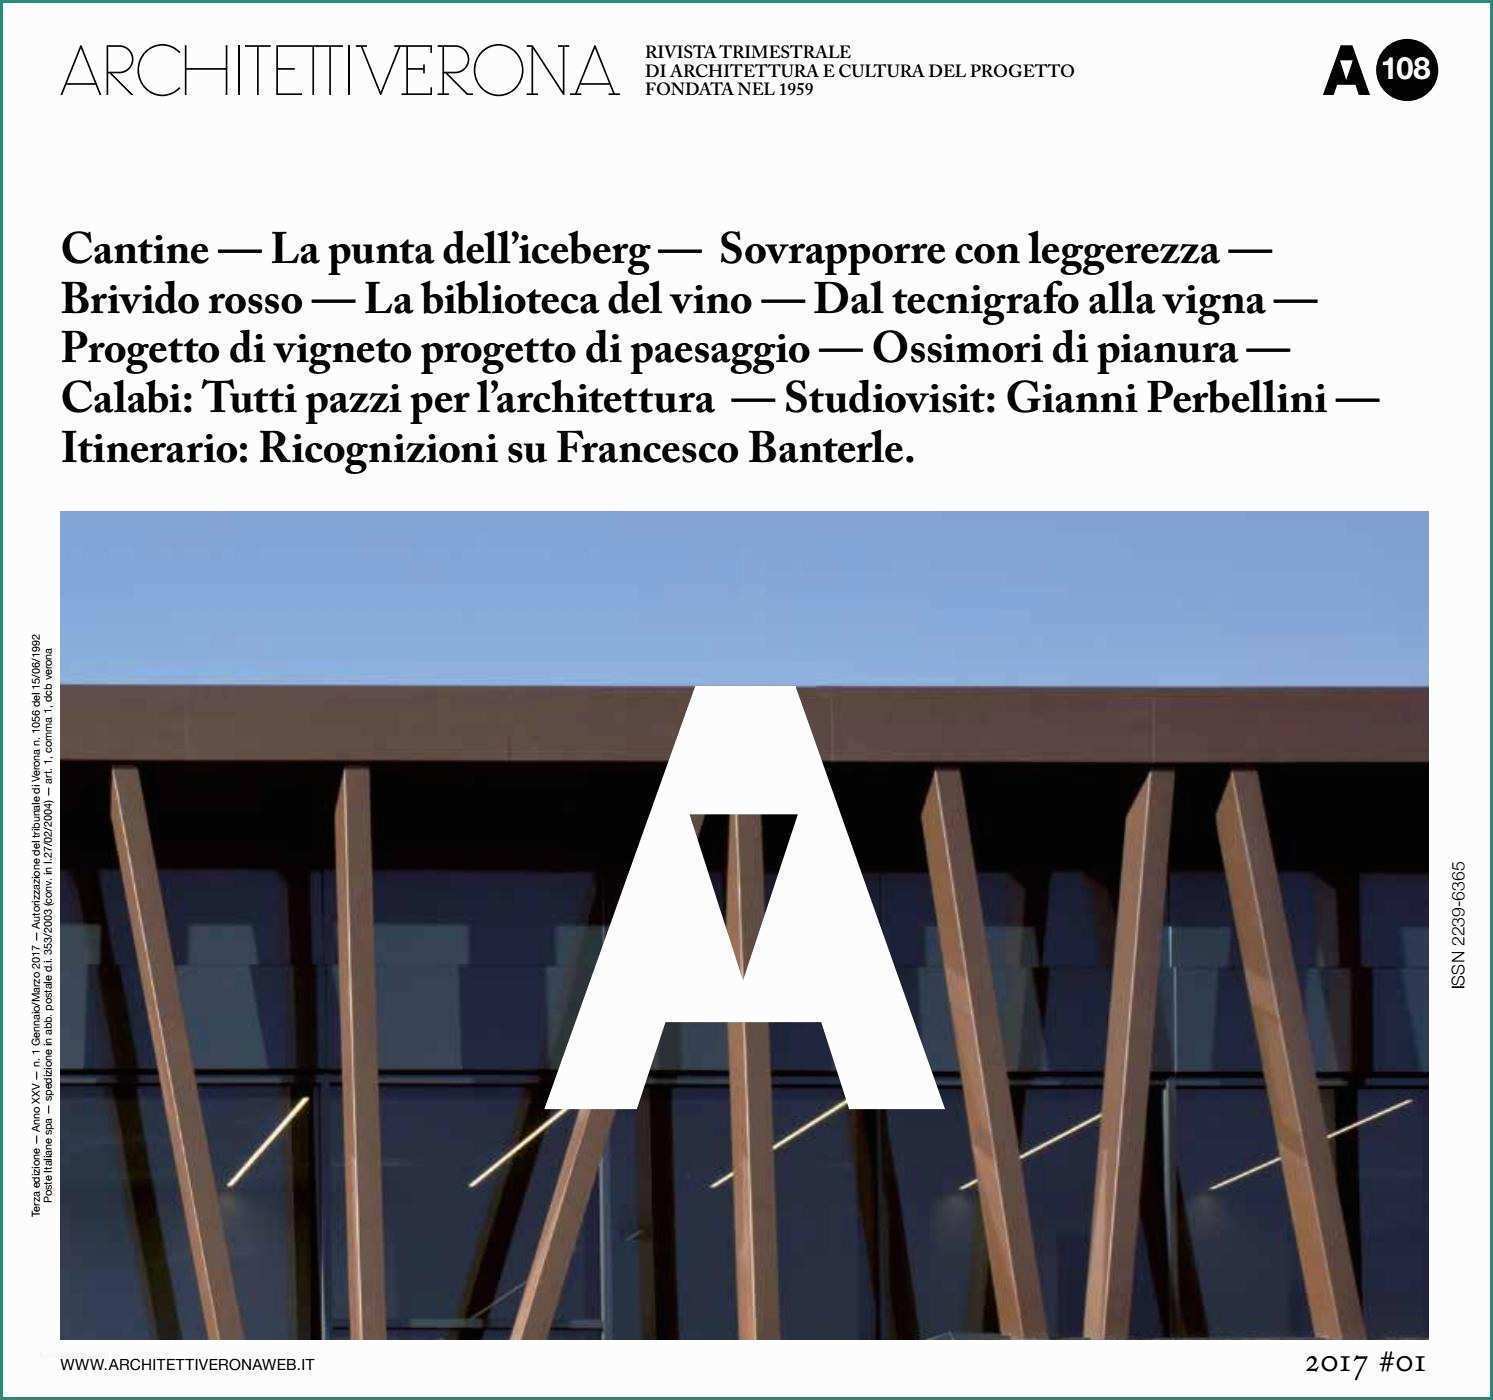 Blocchi Prefabbricati Per Muri Di Contenimento E Architettiverona 108 by Architettiverona issuu